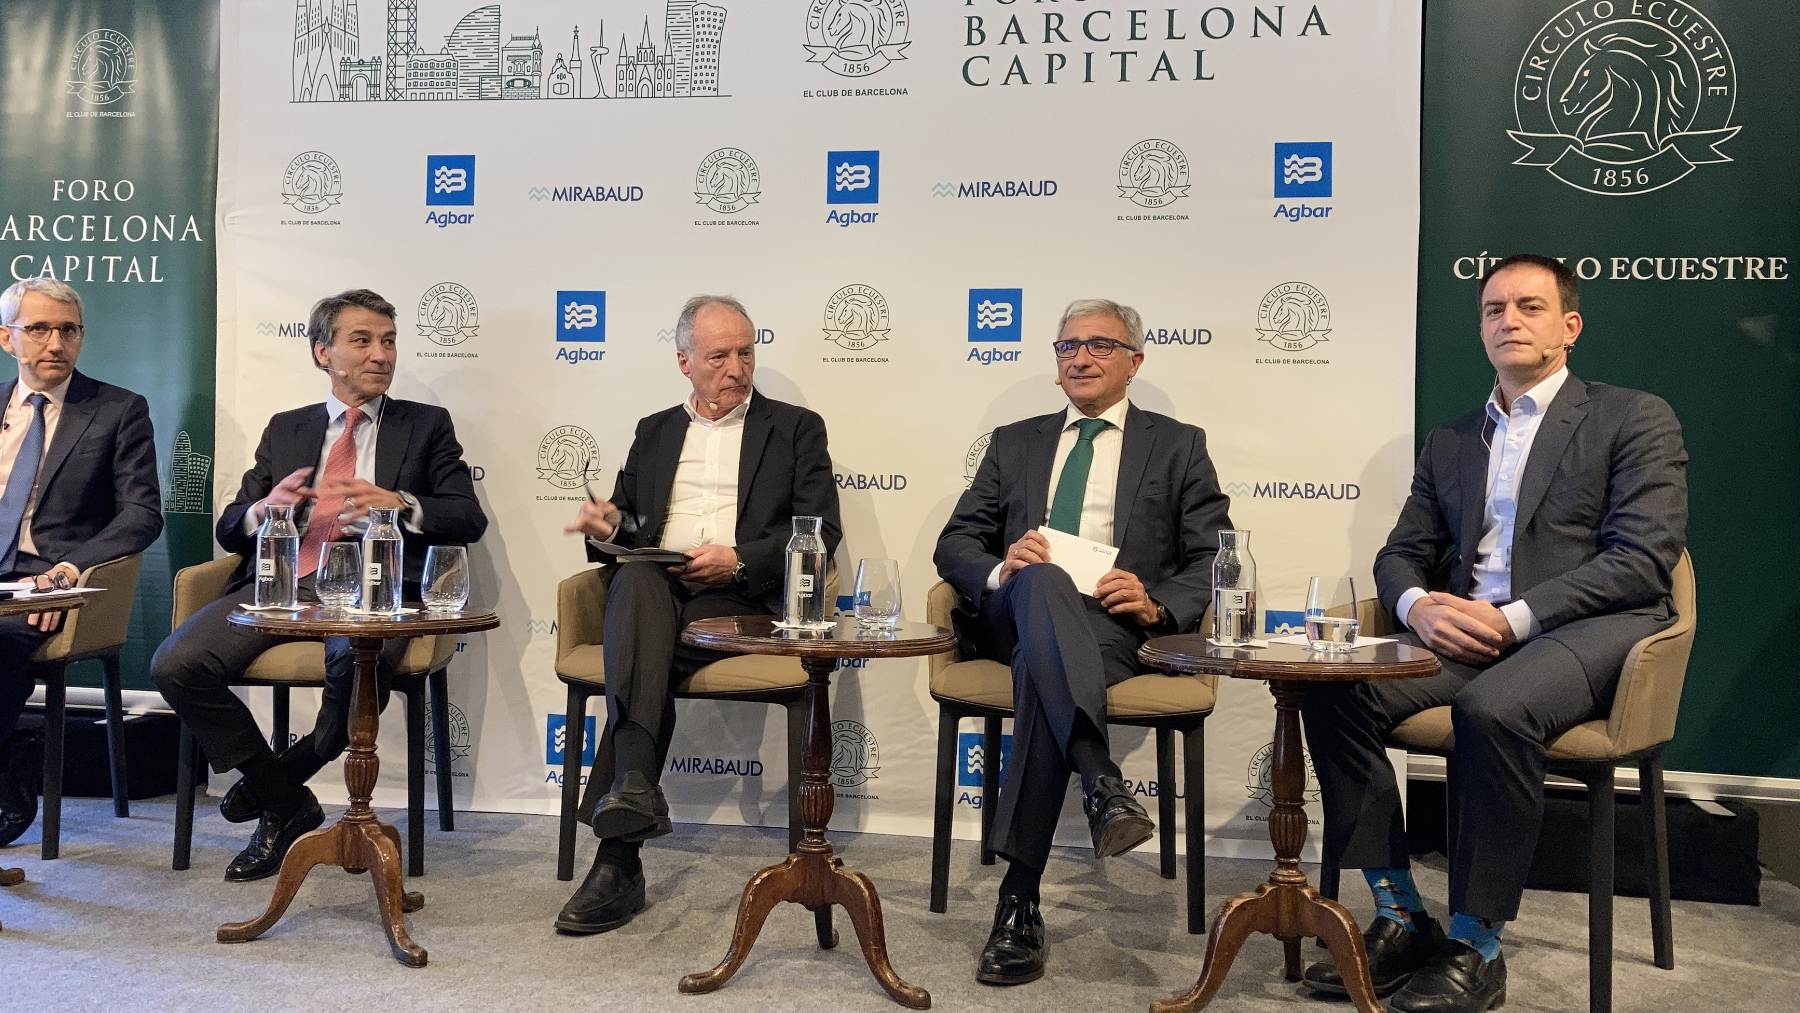 Francesc Rubiralta, presidente de Celsa, el primero a la izquierda de la imagen, sin corbata, en un foro empresarial con otros industriales catalanes, en enero de este año. EP.